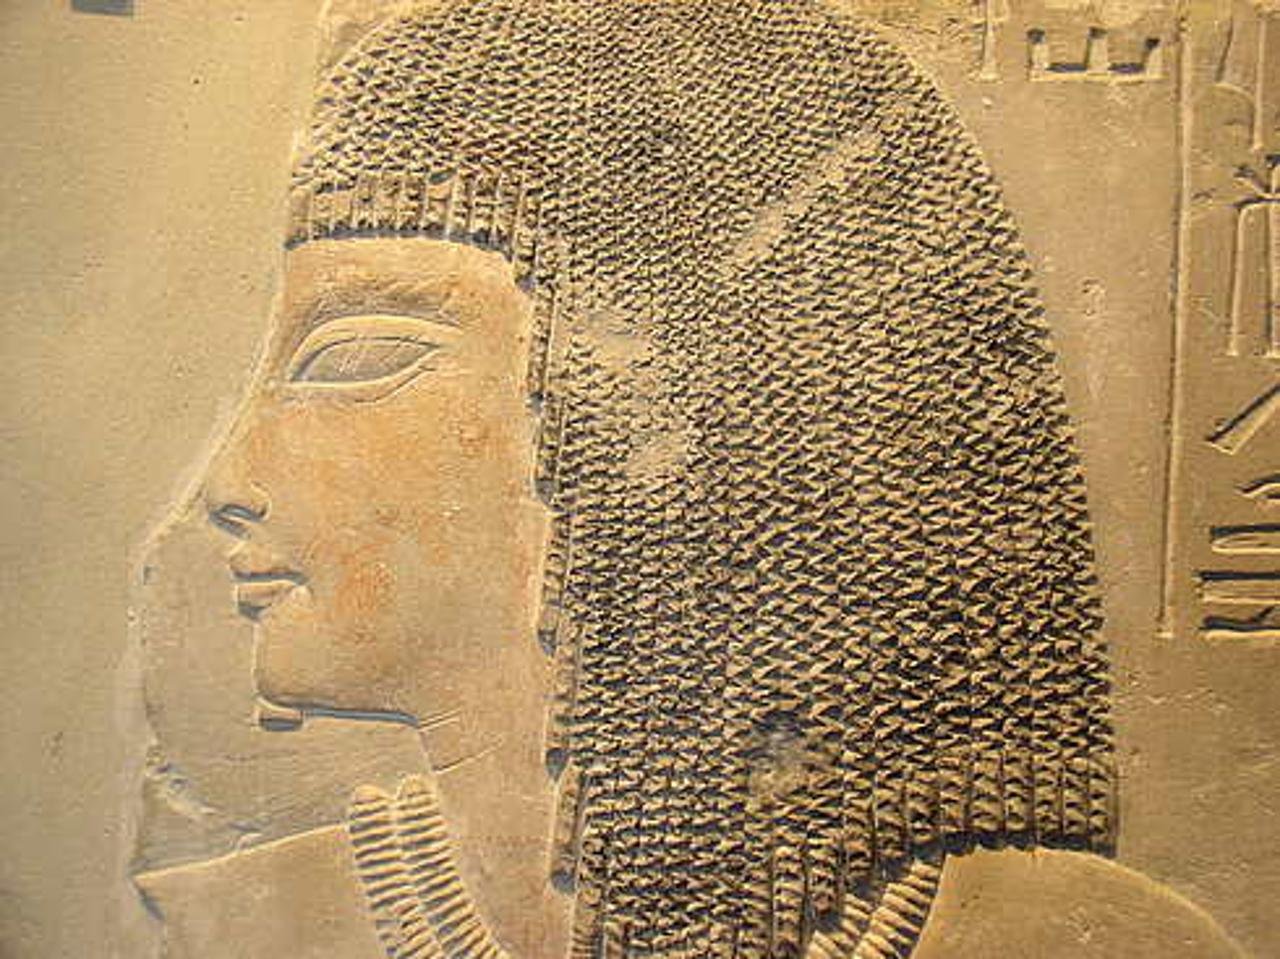 Парик господина Аменмеса. Фрагмент рельефа из гробницы Именеминета в Саккаре.